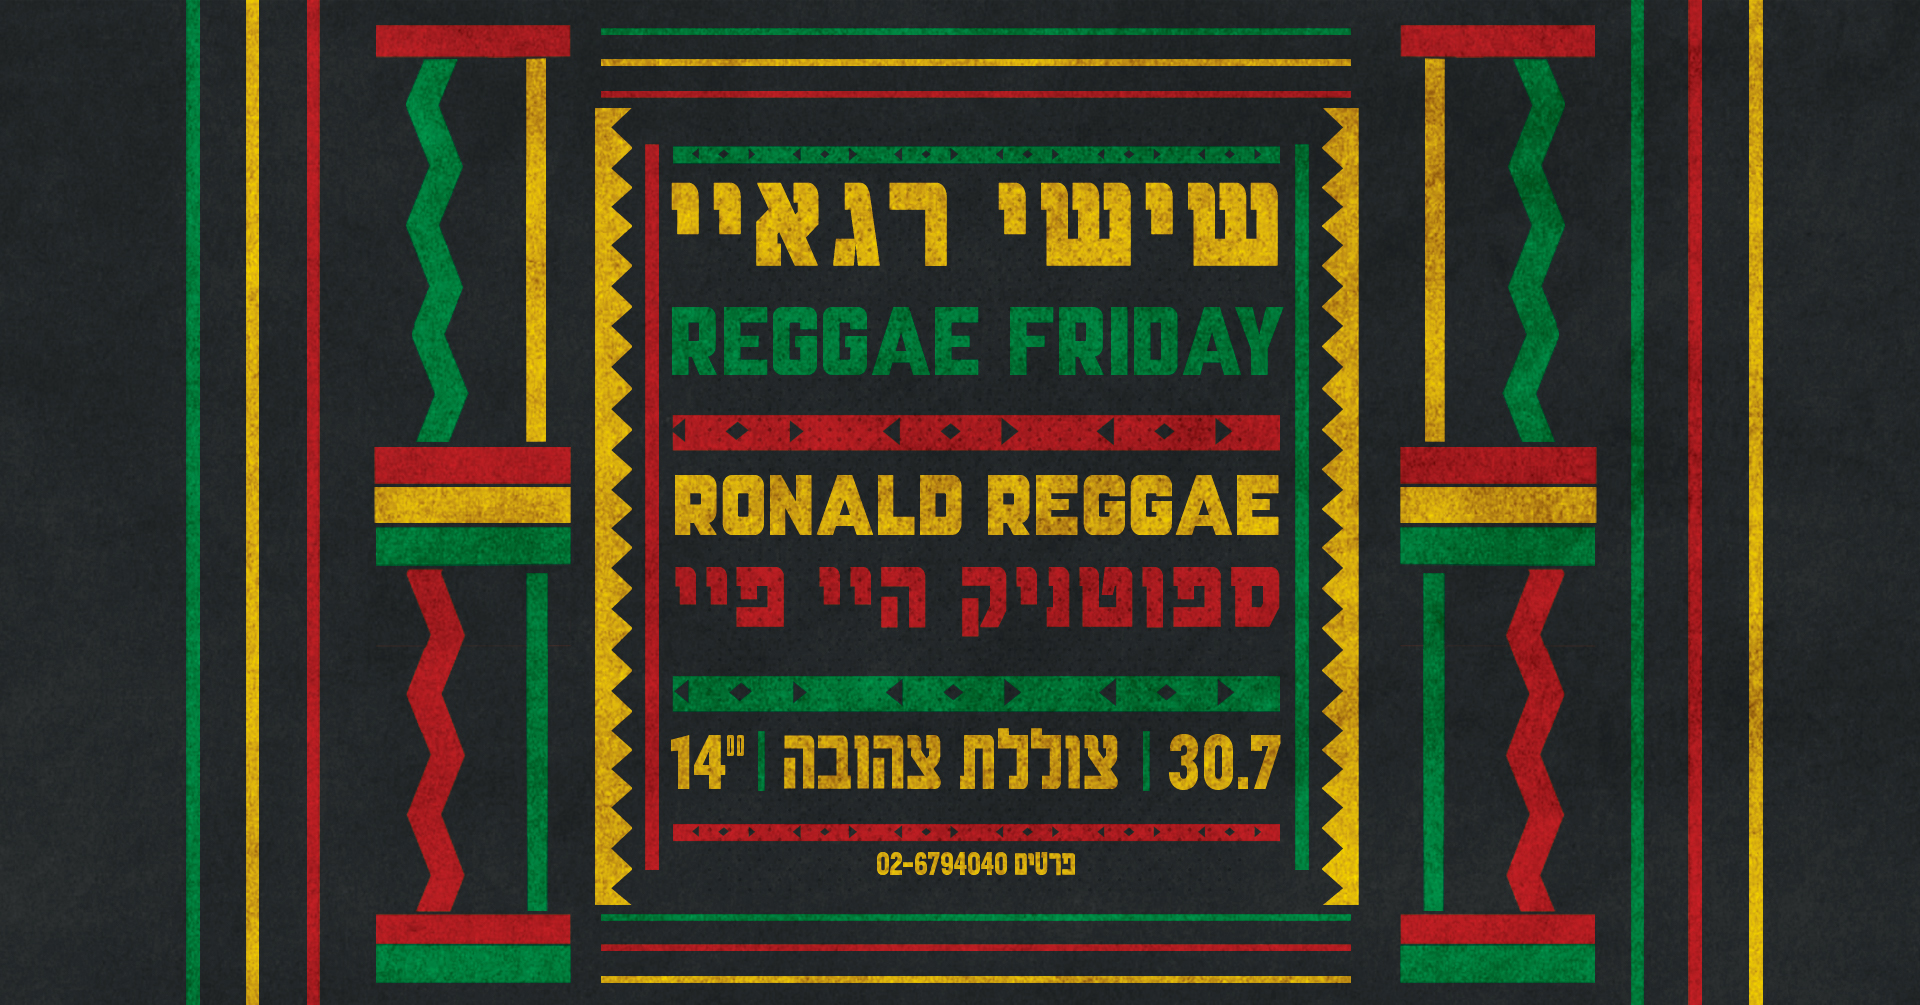 Reggae Friday